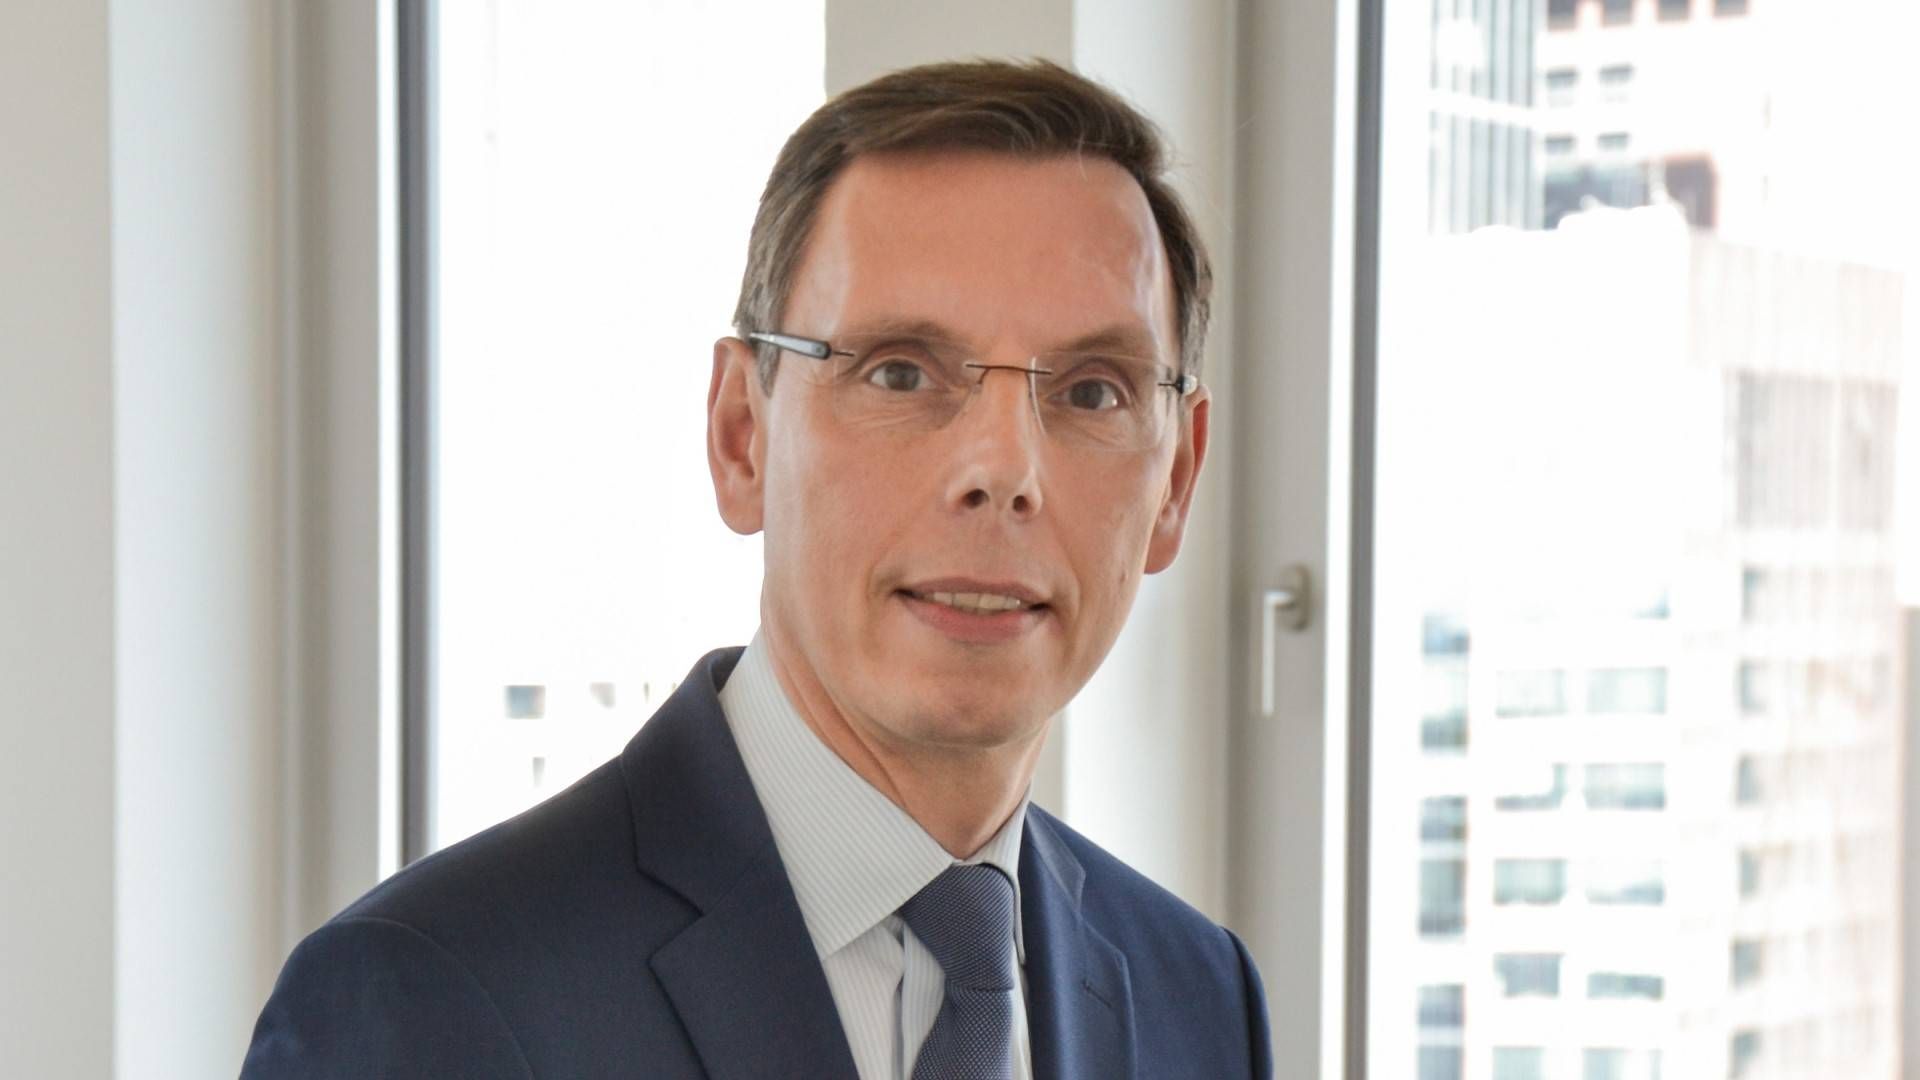 Jochen Wiesbach wird neues Mitglied der Geschäftsführung der Union Investment Privatfonds GmbH | Foto: Union Investment Privatfonds GmbH